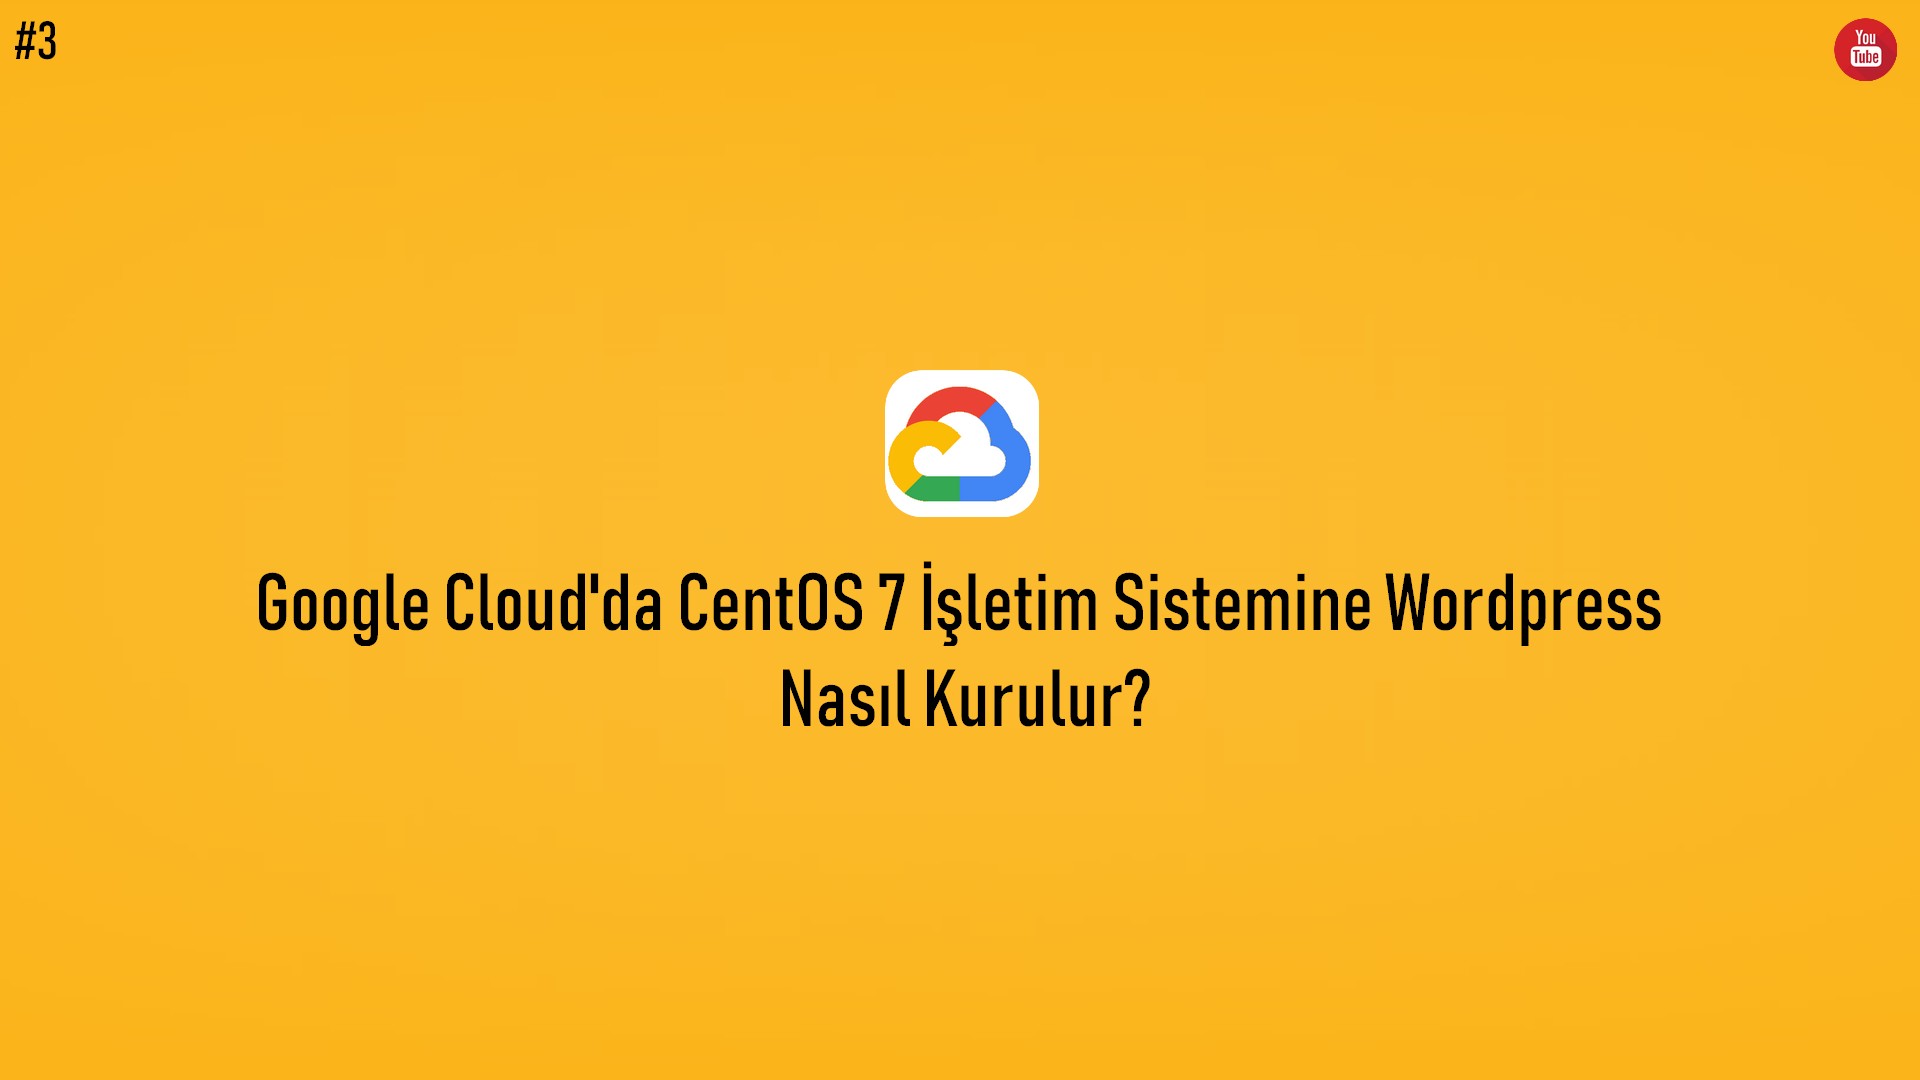 Google Cloud'da CentOS 7 İşletim Sistemine Wordpress Nasıl Kurulur? (Video İçerik) başlıklı içeriğin kapak resmi.